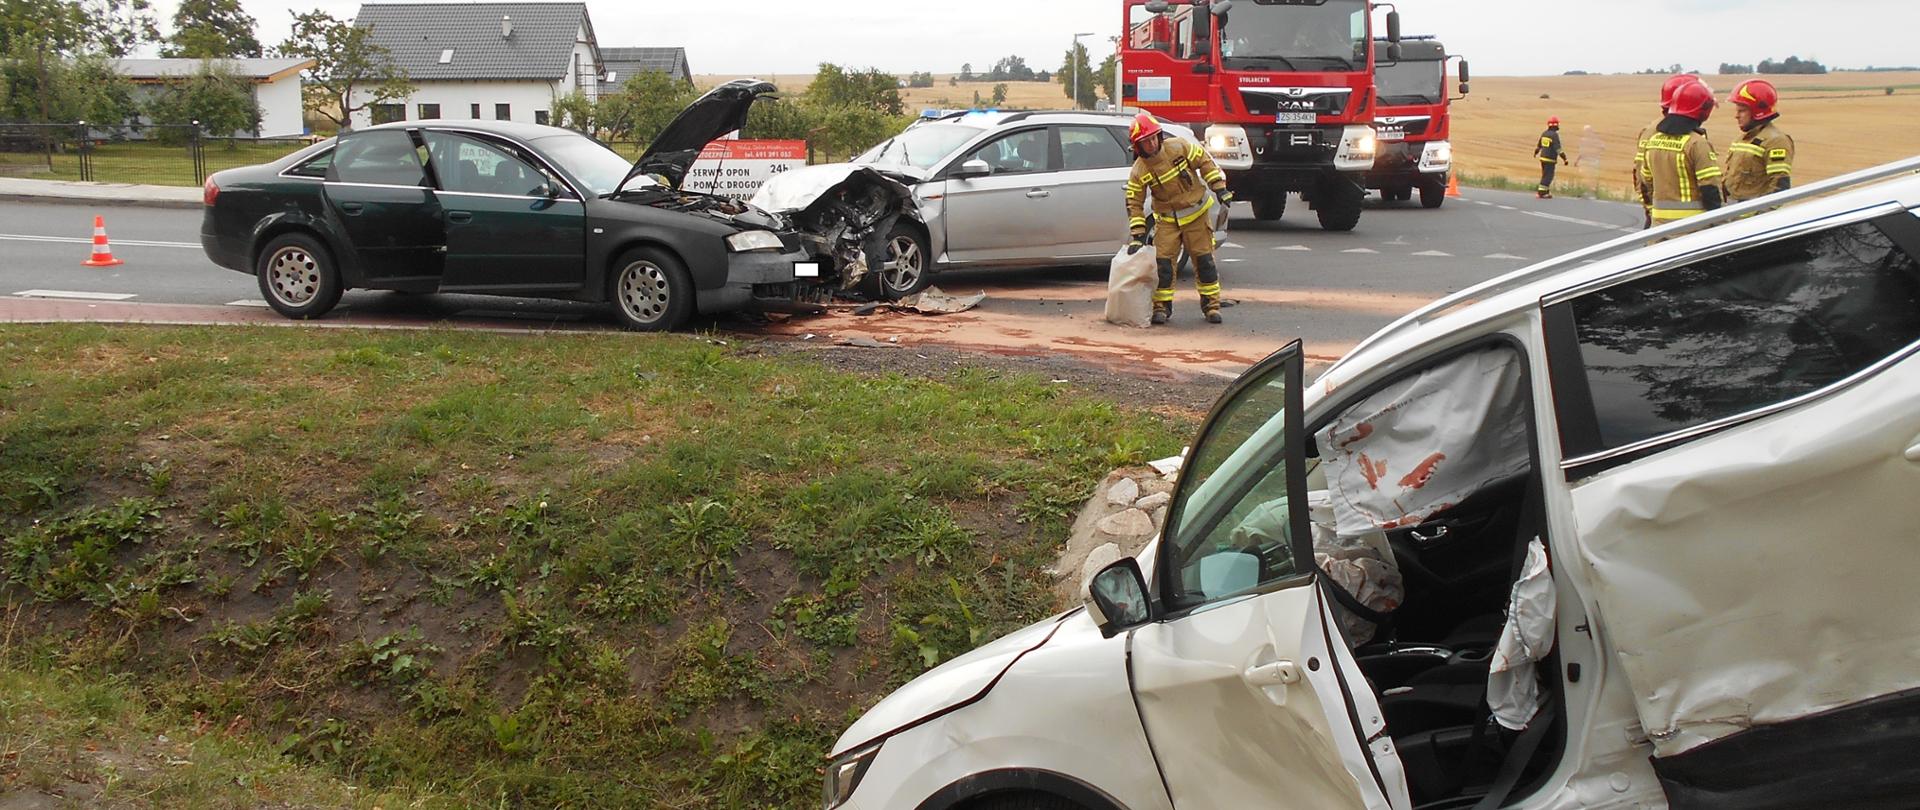 Zdjęcie przestawia trzy pojazdy uczestniczące w wypadku komunikacyjnym